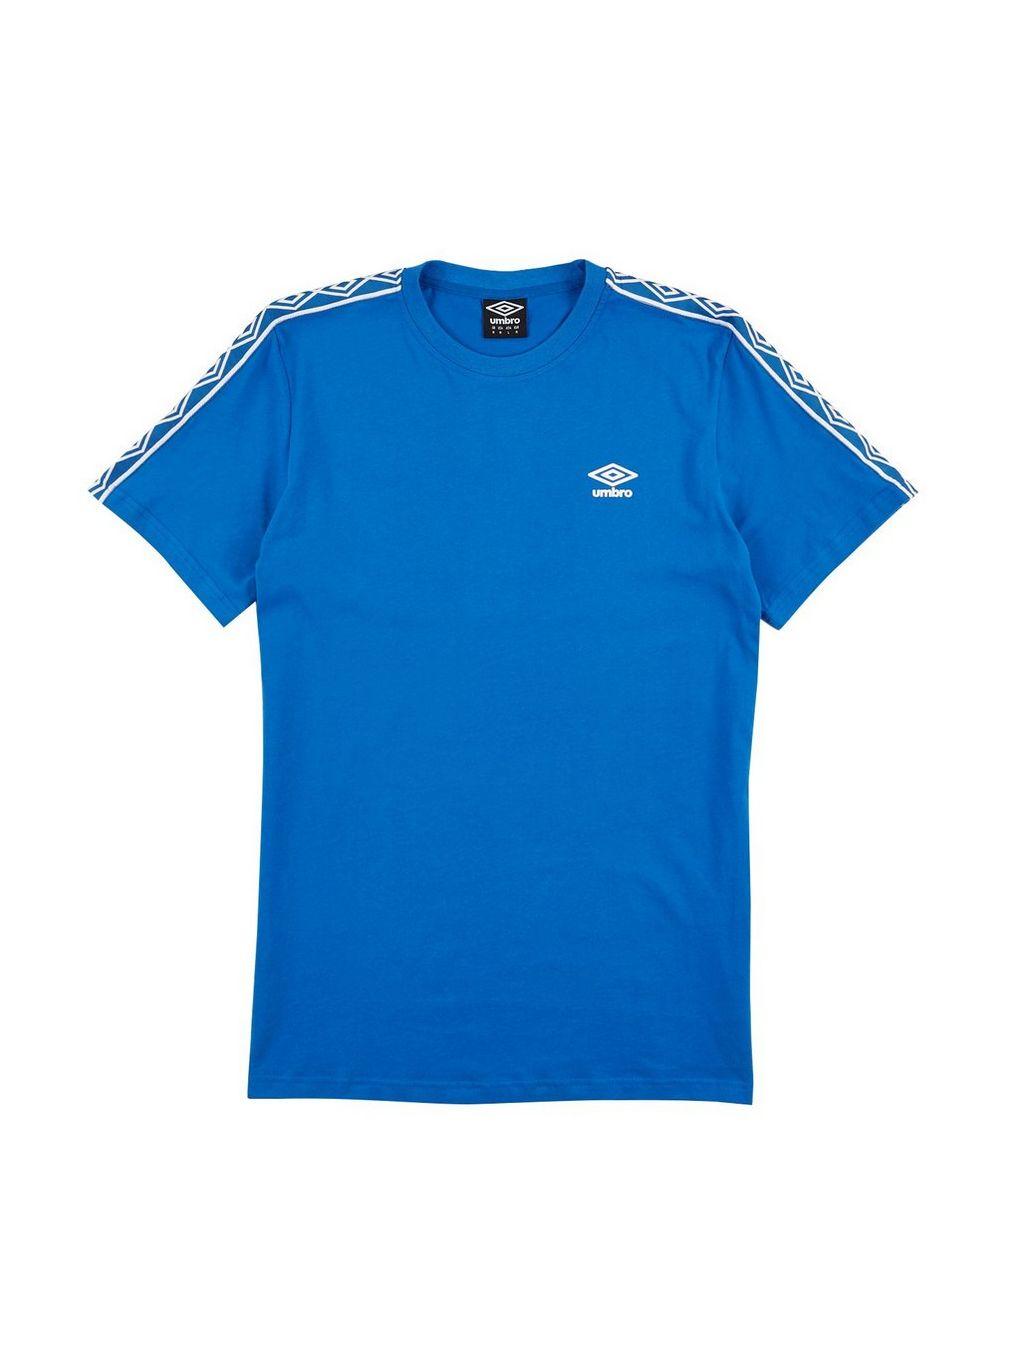 Umbro International Logo - Umbro Blue Retro Logo T-Shirt* - T-Shirts & Vests - Clothing